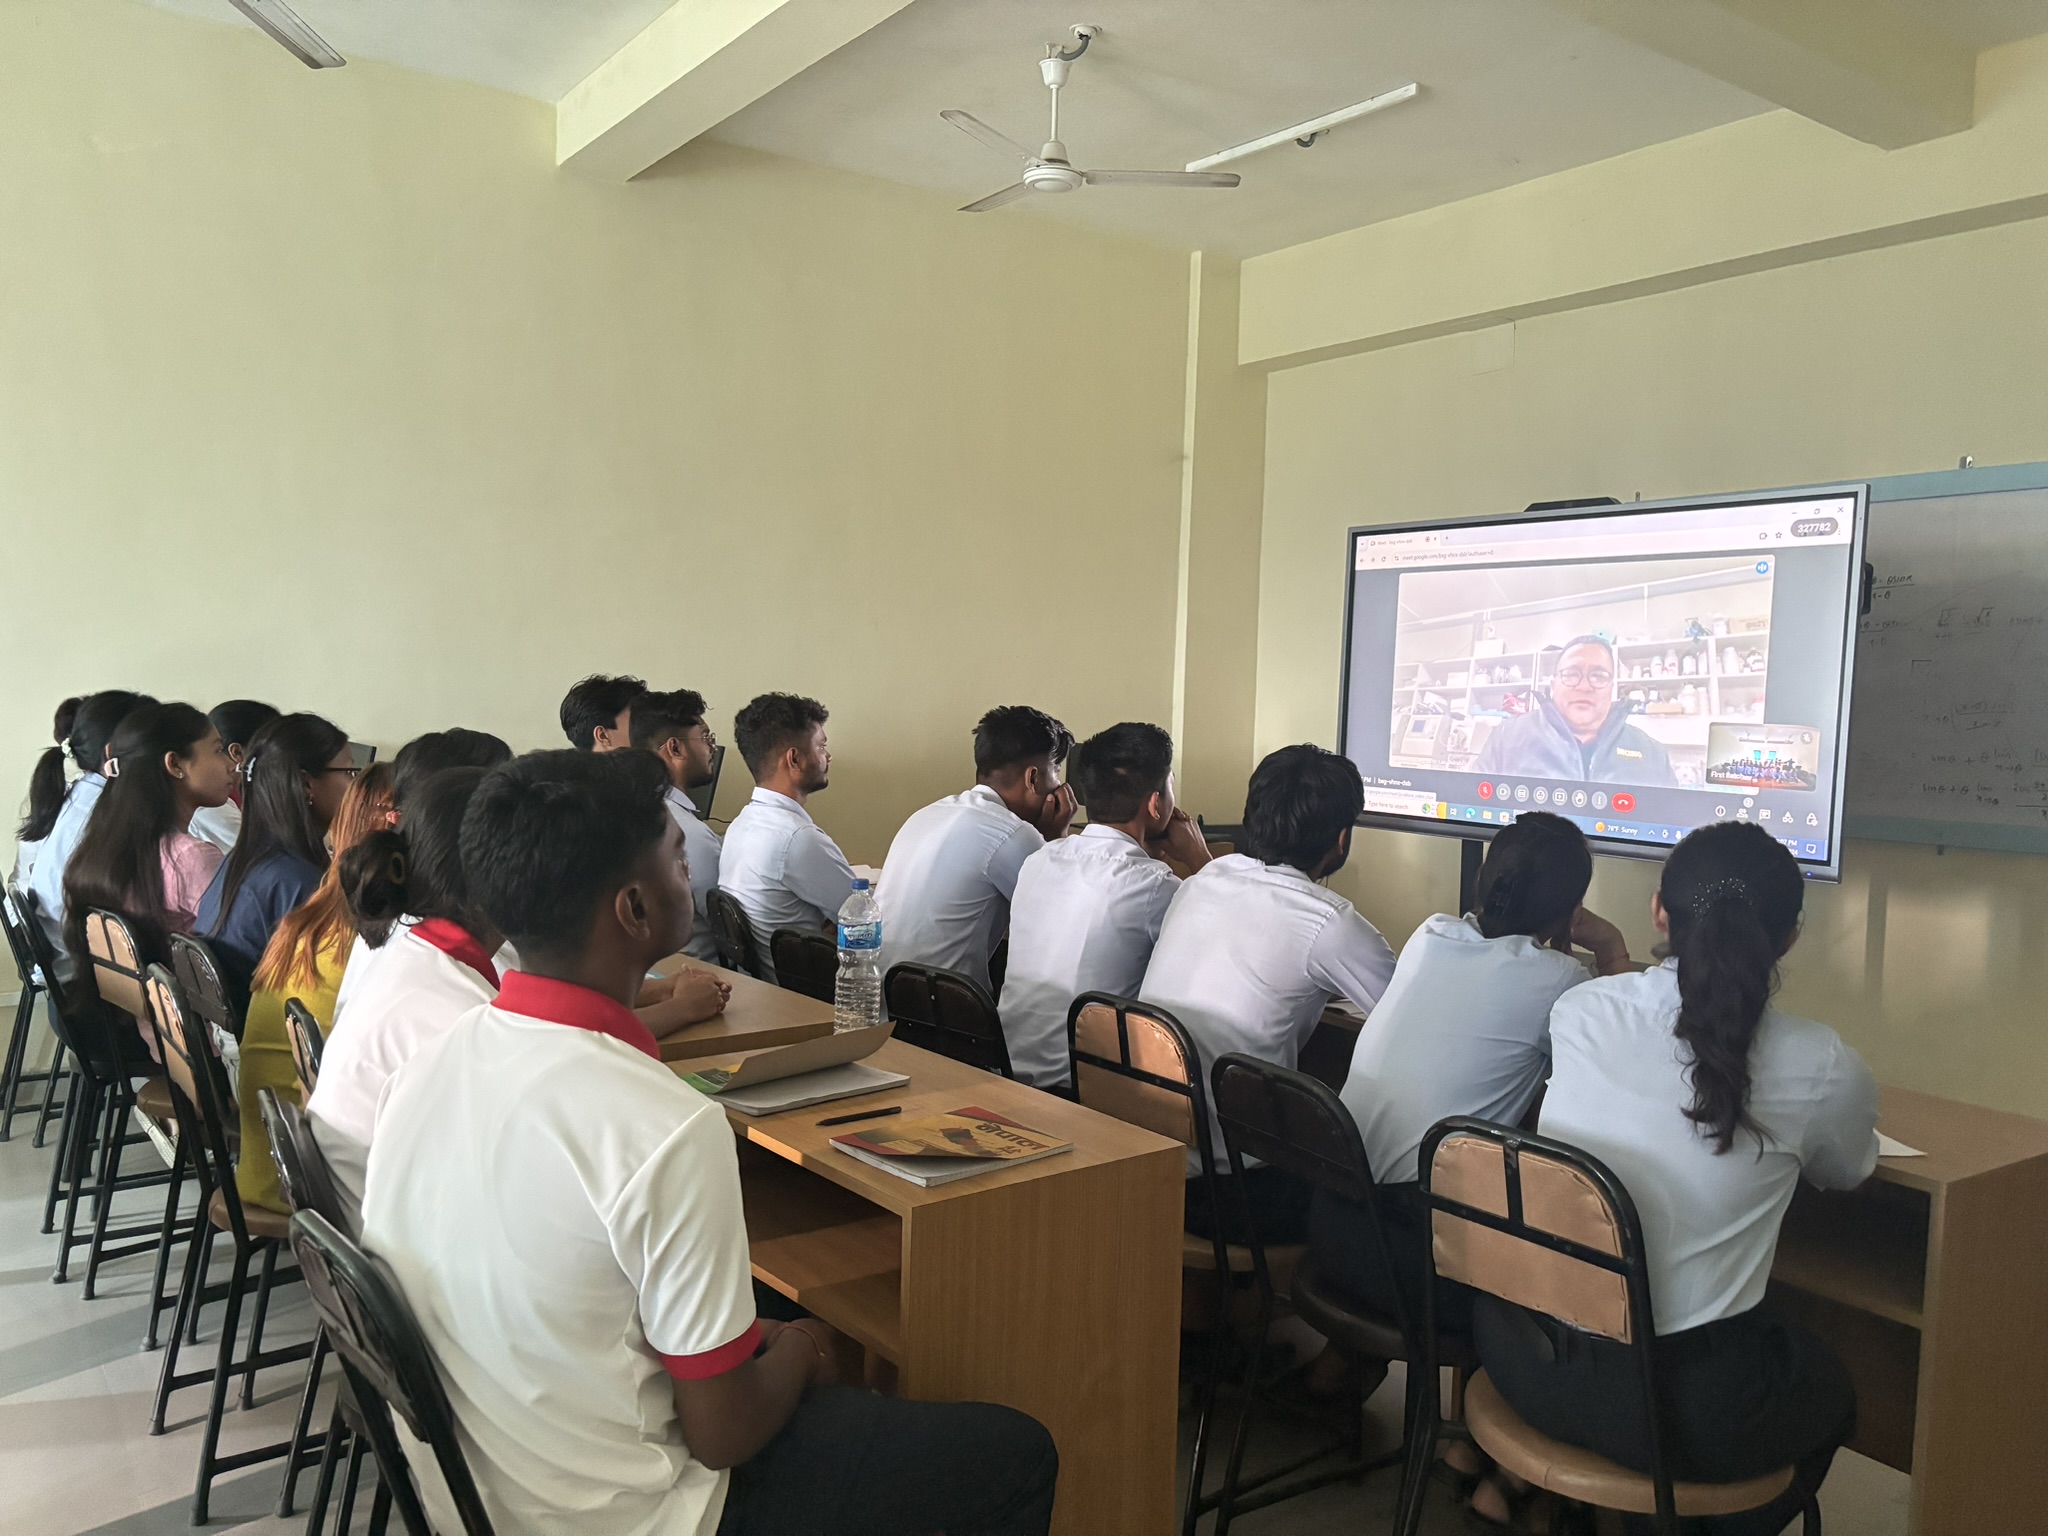 Webinar by Dr Subarna Pokharel to Pharmacy Students